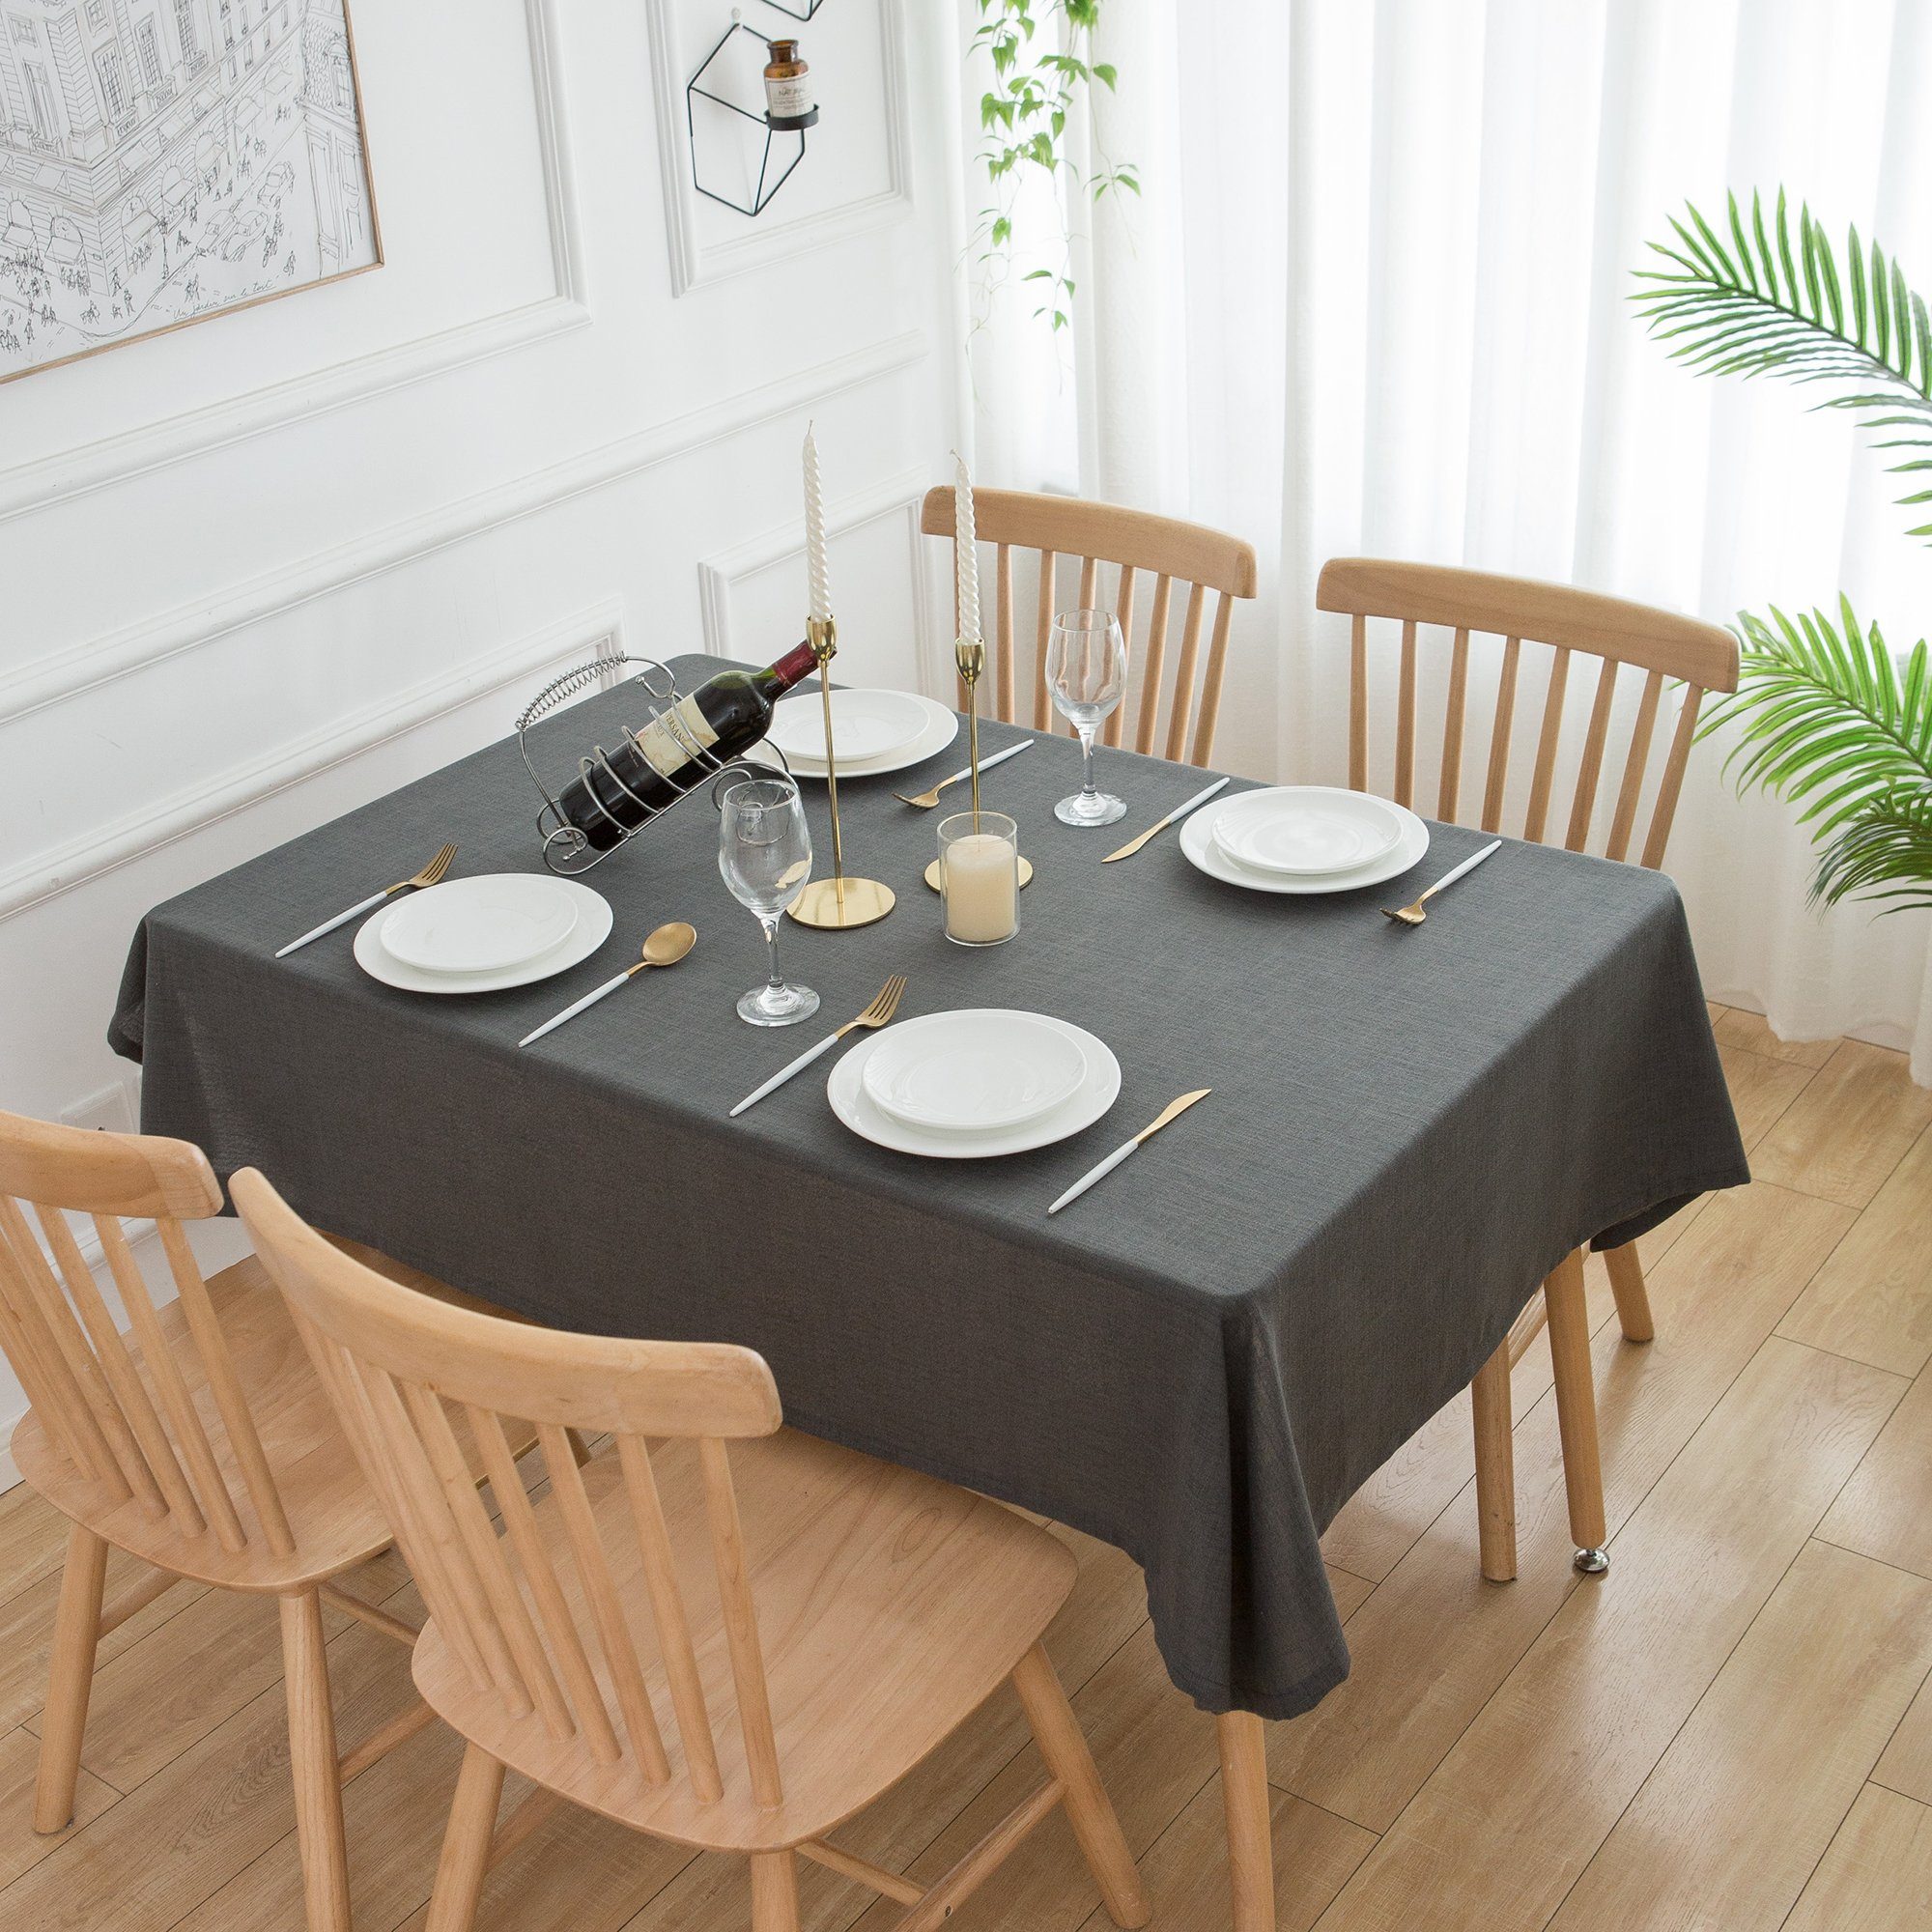 Simurq Table - Abwaschbar Tischtuch Lotuseffekt Tischdecke - Leinenoptik Tischdecke (Pflegeleicht Tischdecken, & Cloth) Tischdecke Wasserabweisend, fleckenabweisend Rund